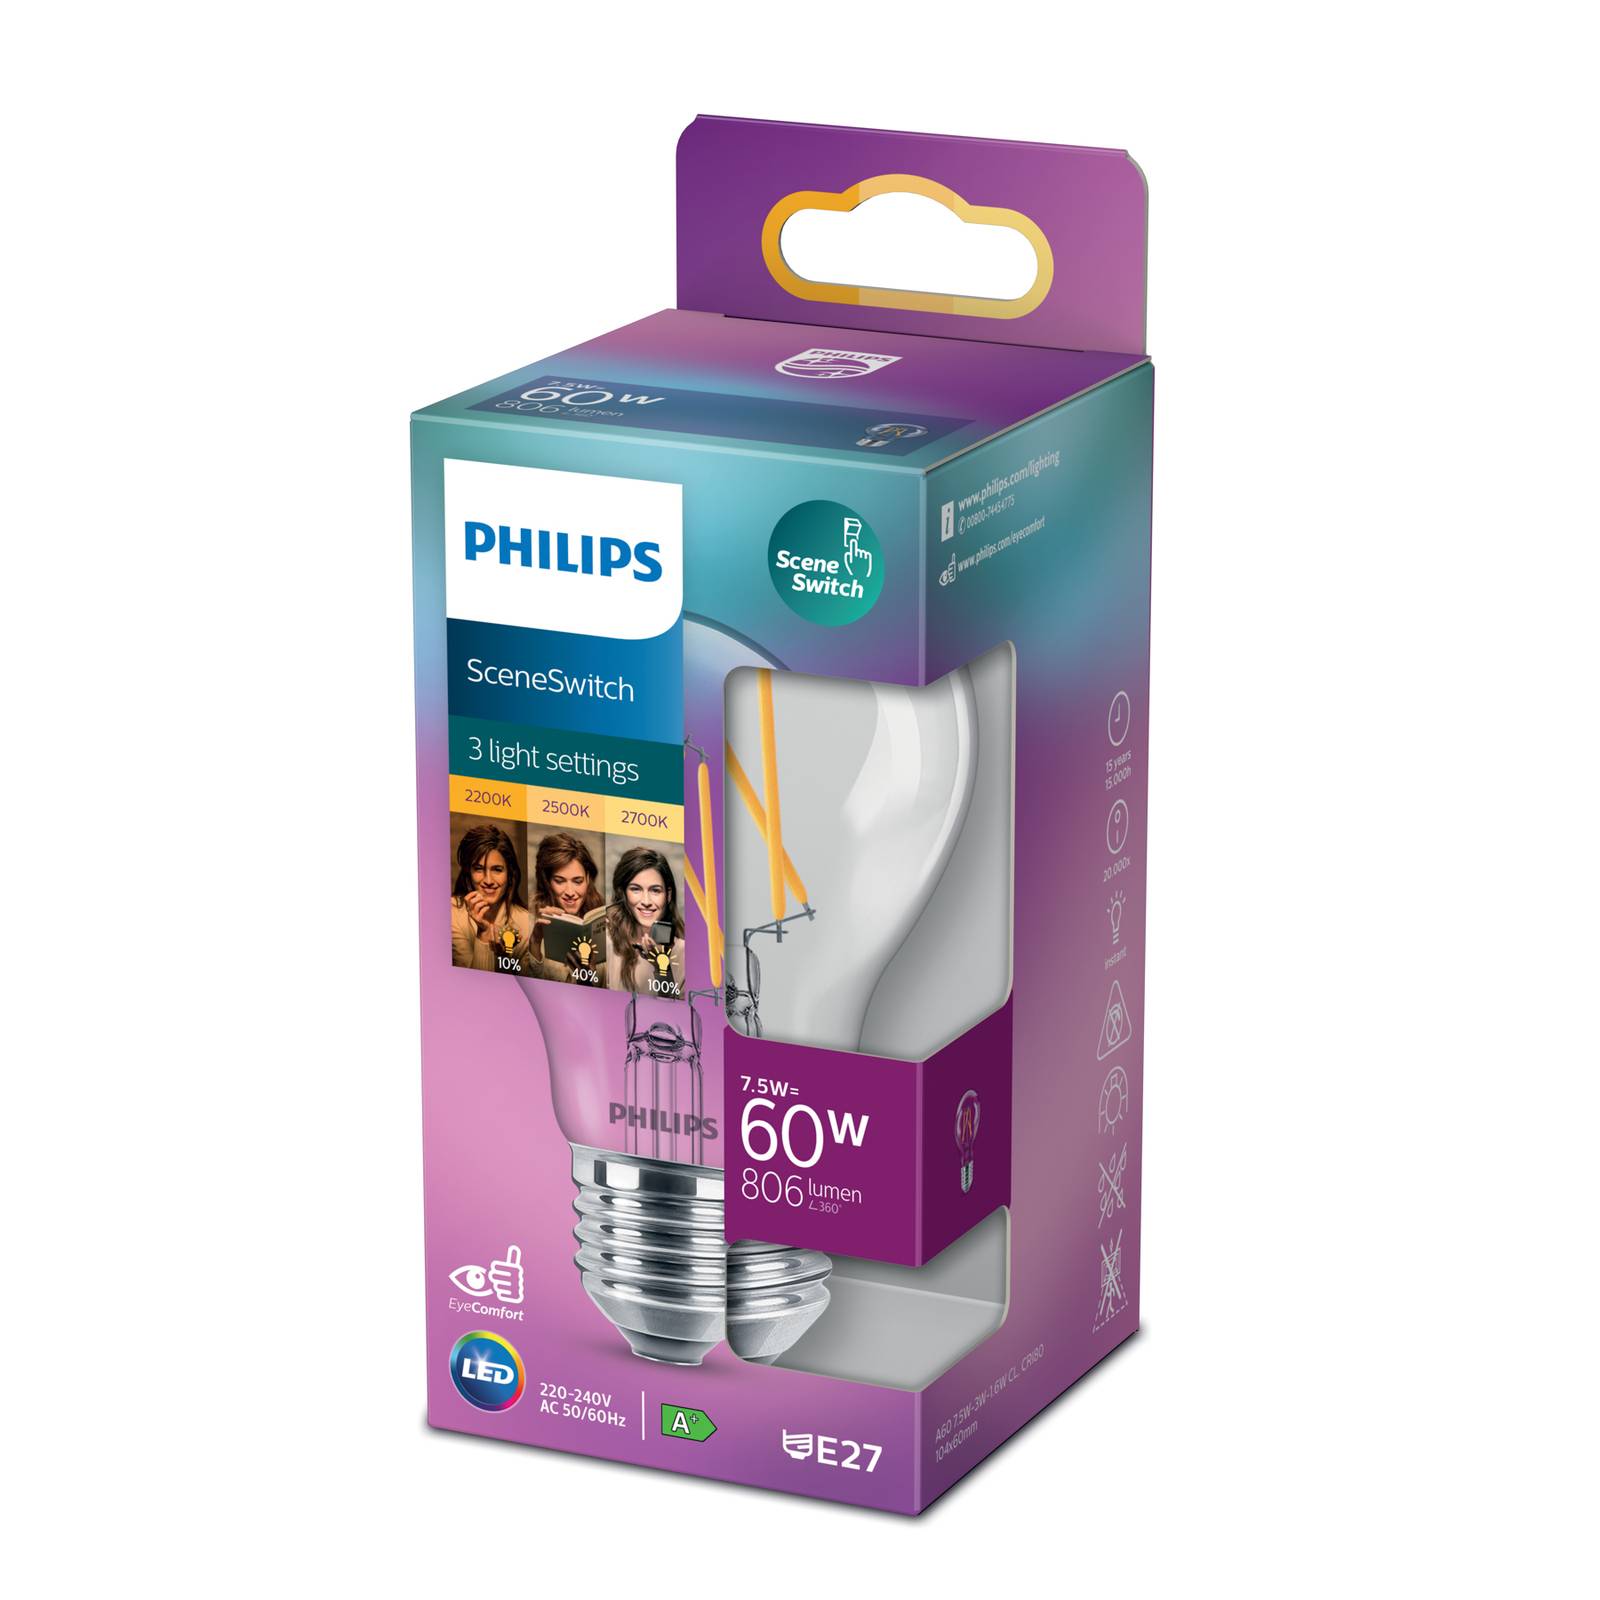 Philips SceneSwitch E27 LED-Lampe 7,5W Filament von Philips